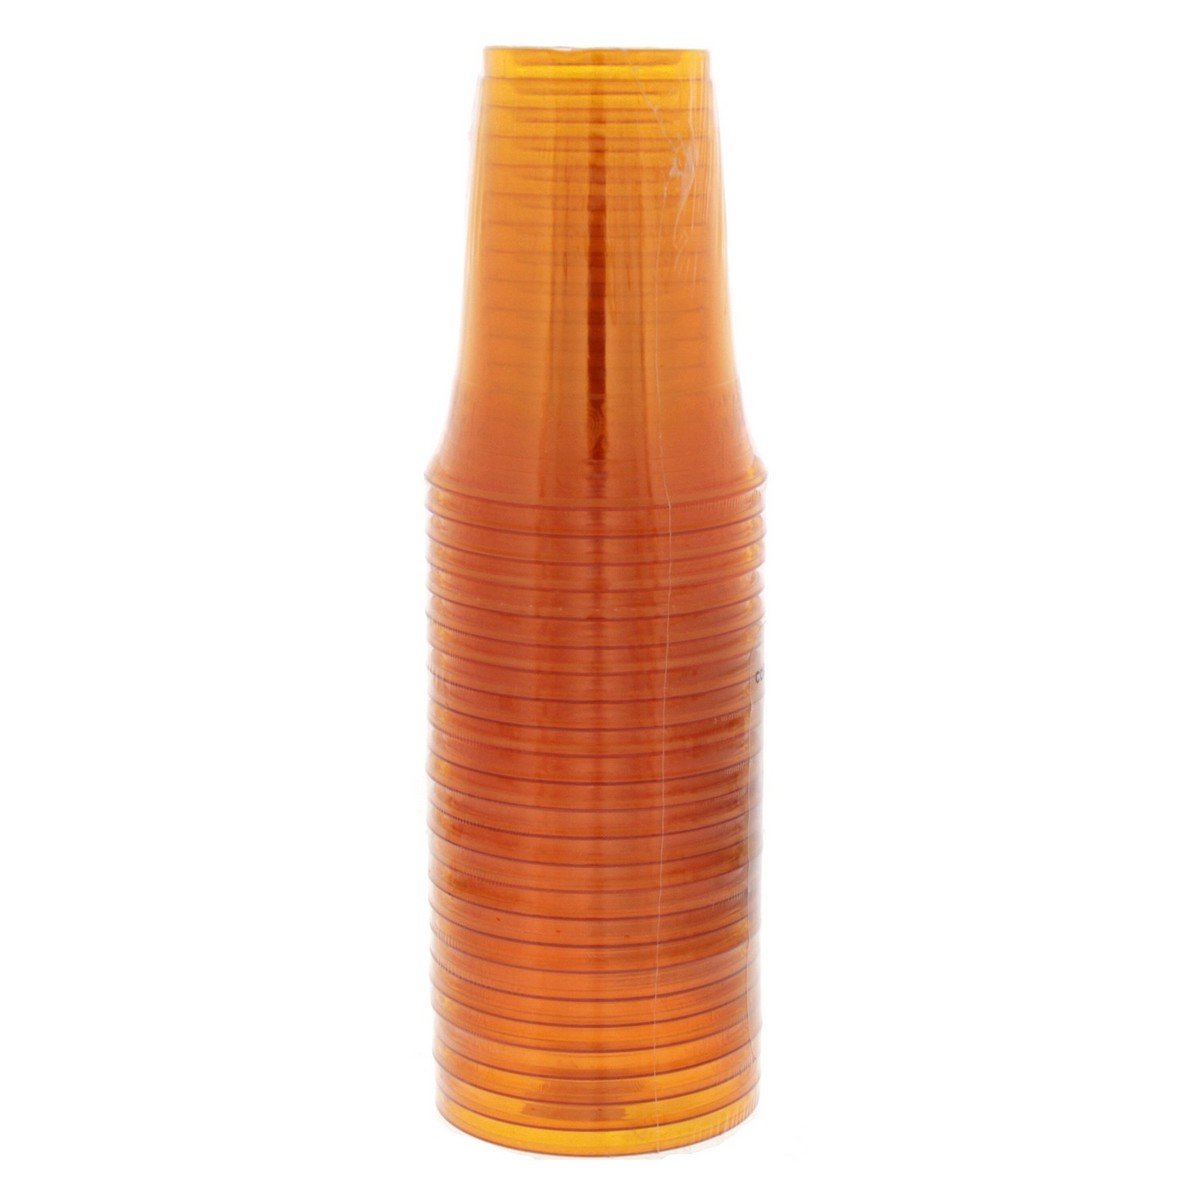 Fun Coloured Plastic Cup Orange, 25 pcs